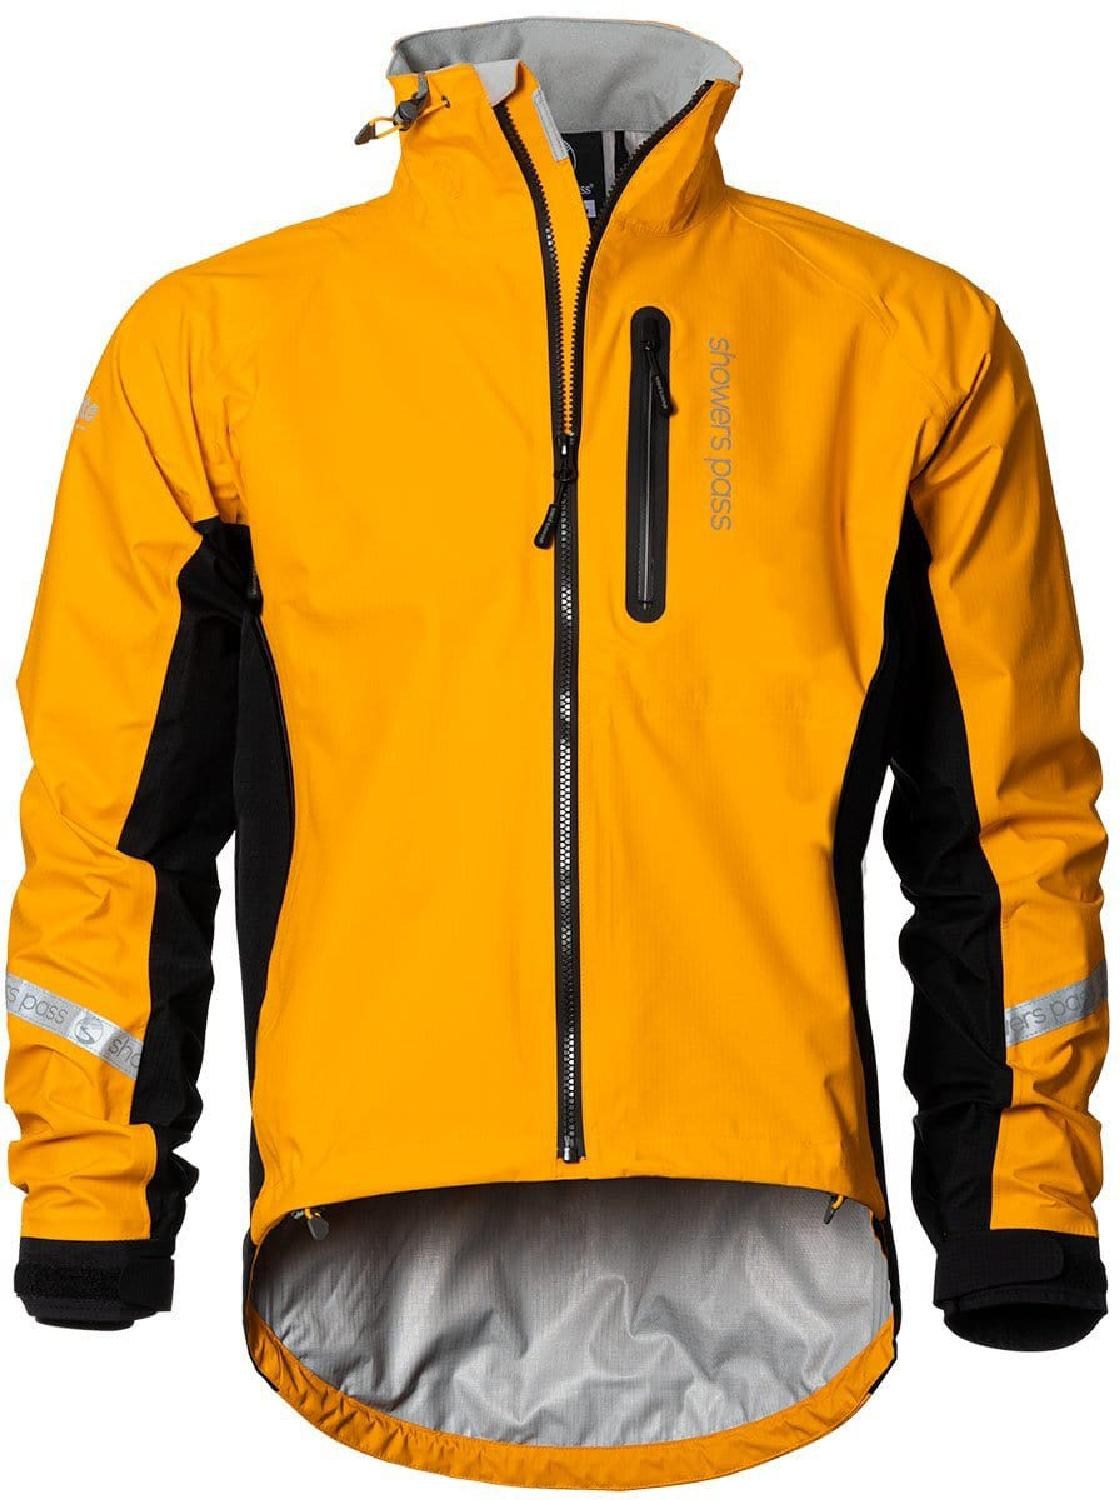 Велосипедная куртка Elite 2.1 — мужская Showers Pass, оранжевый фото